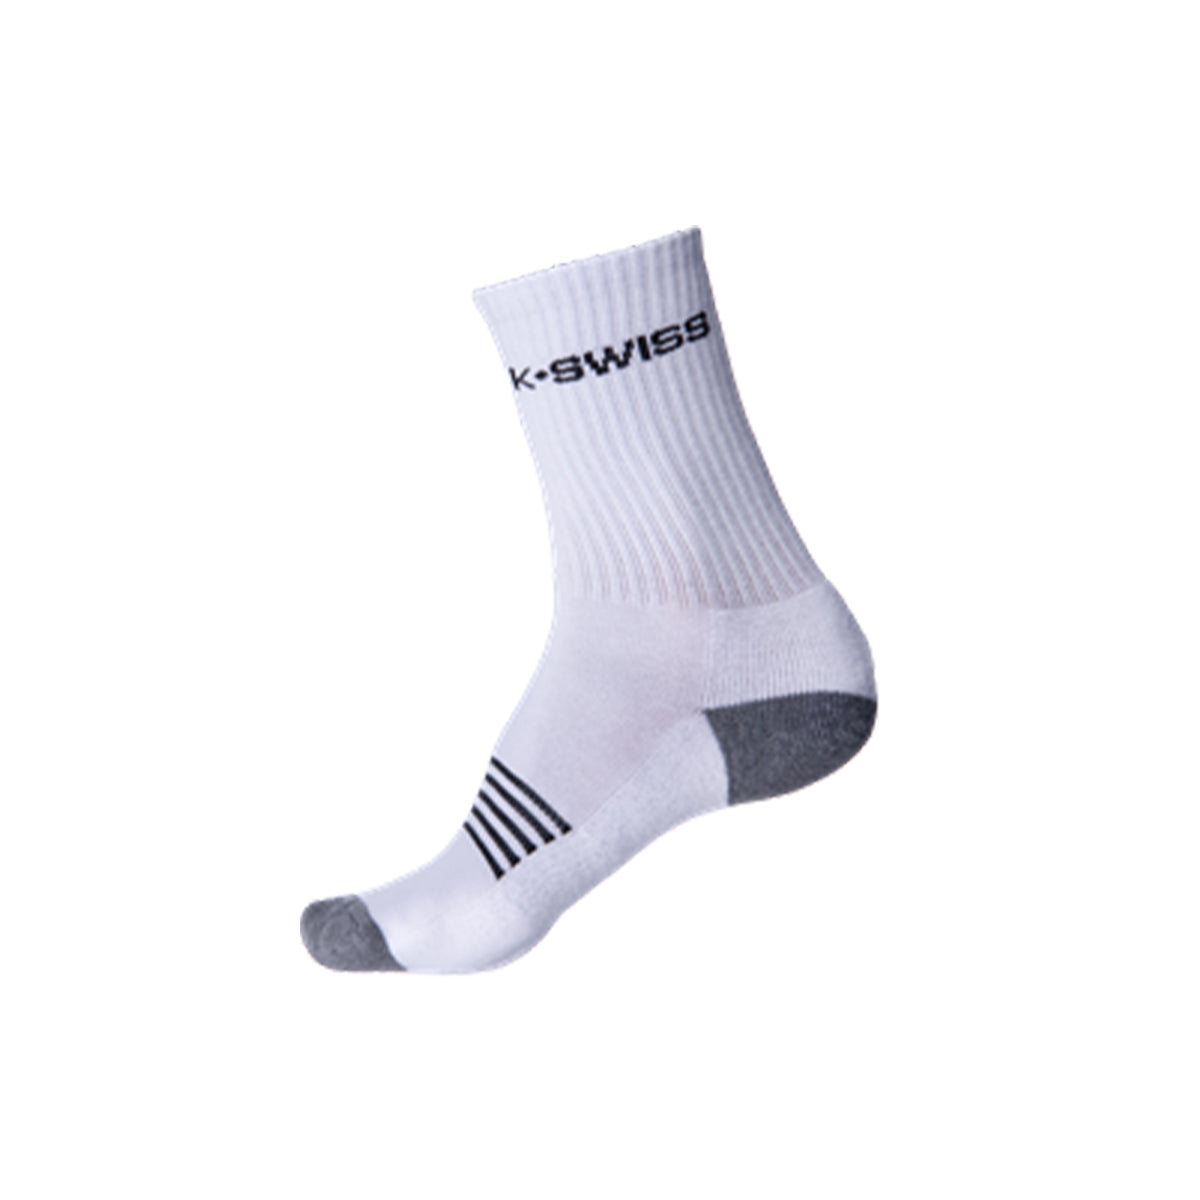 K Swiss Mens Crew Socks 3 Pack: White